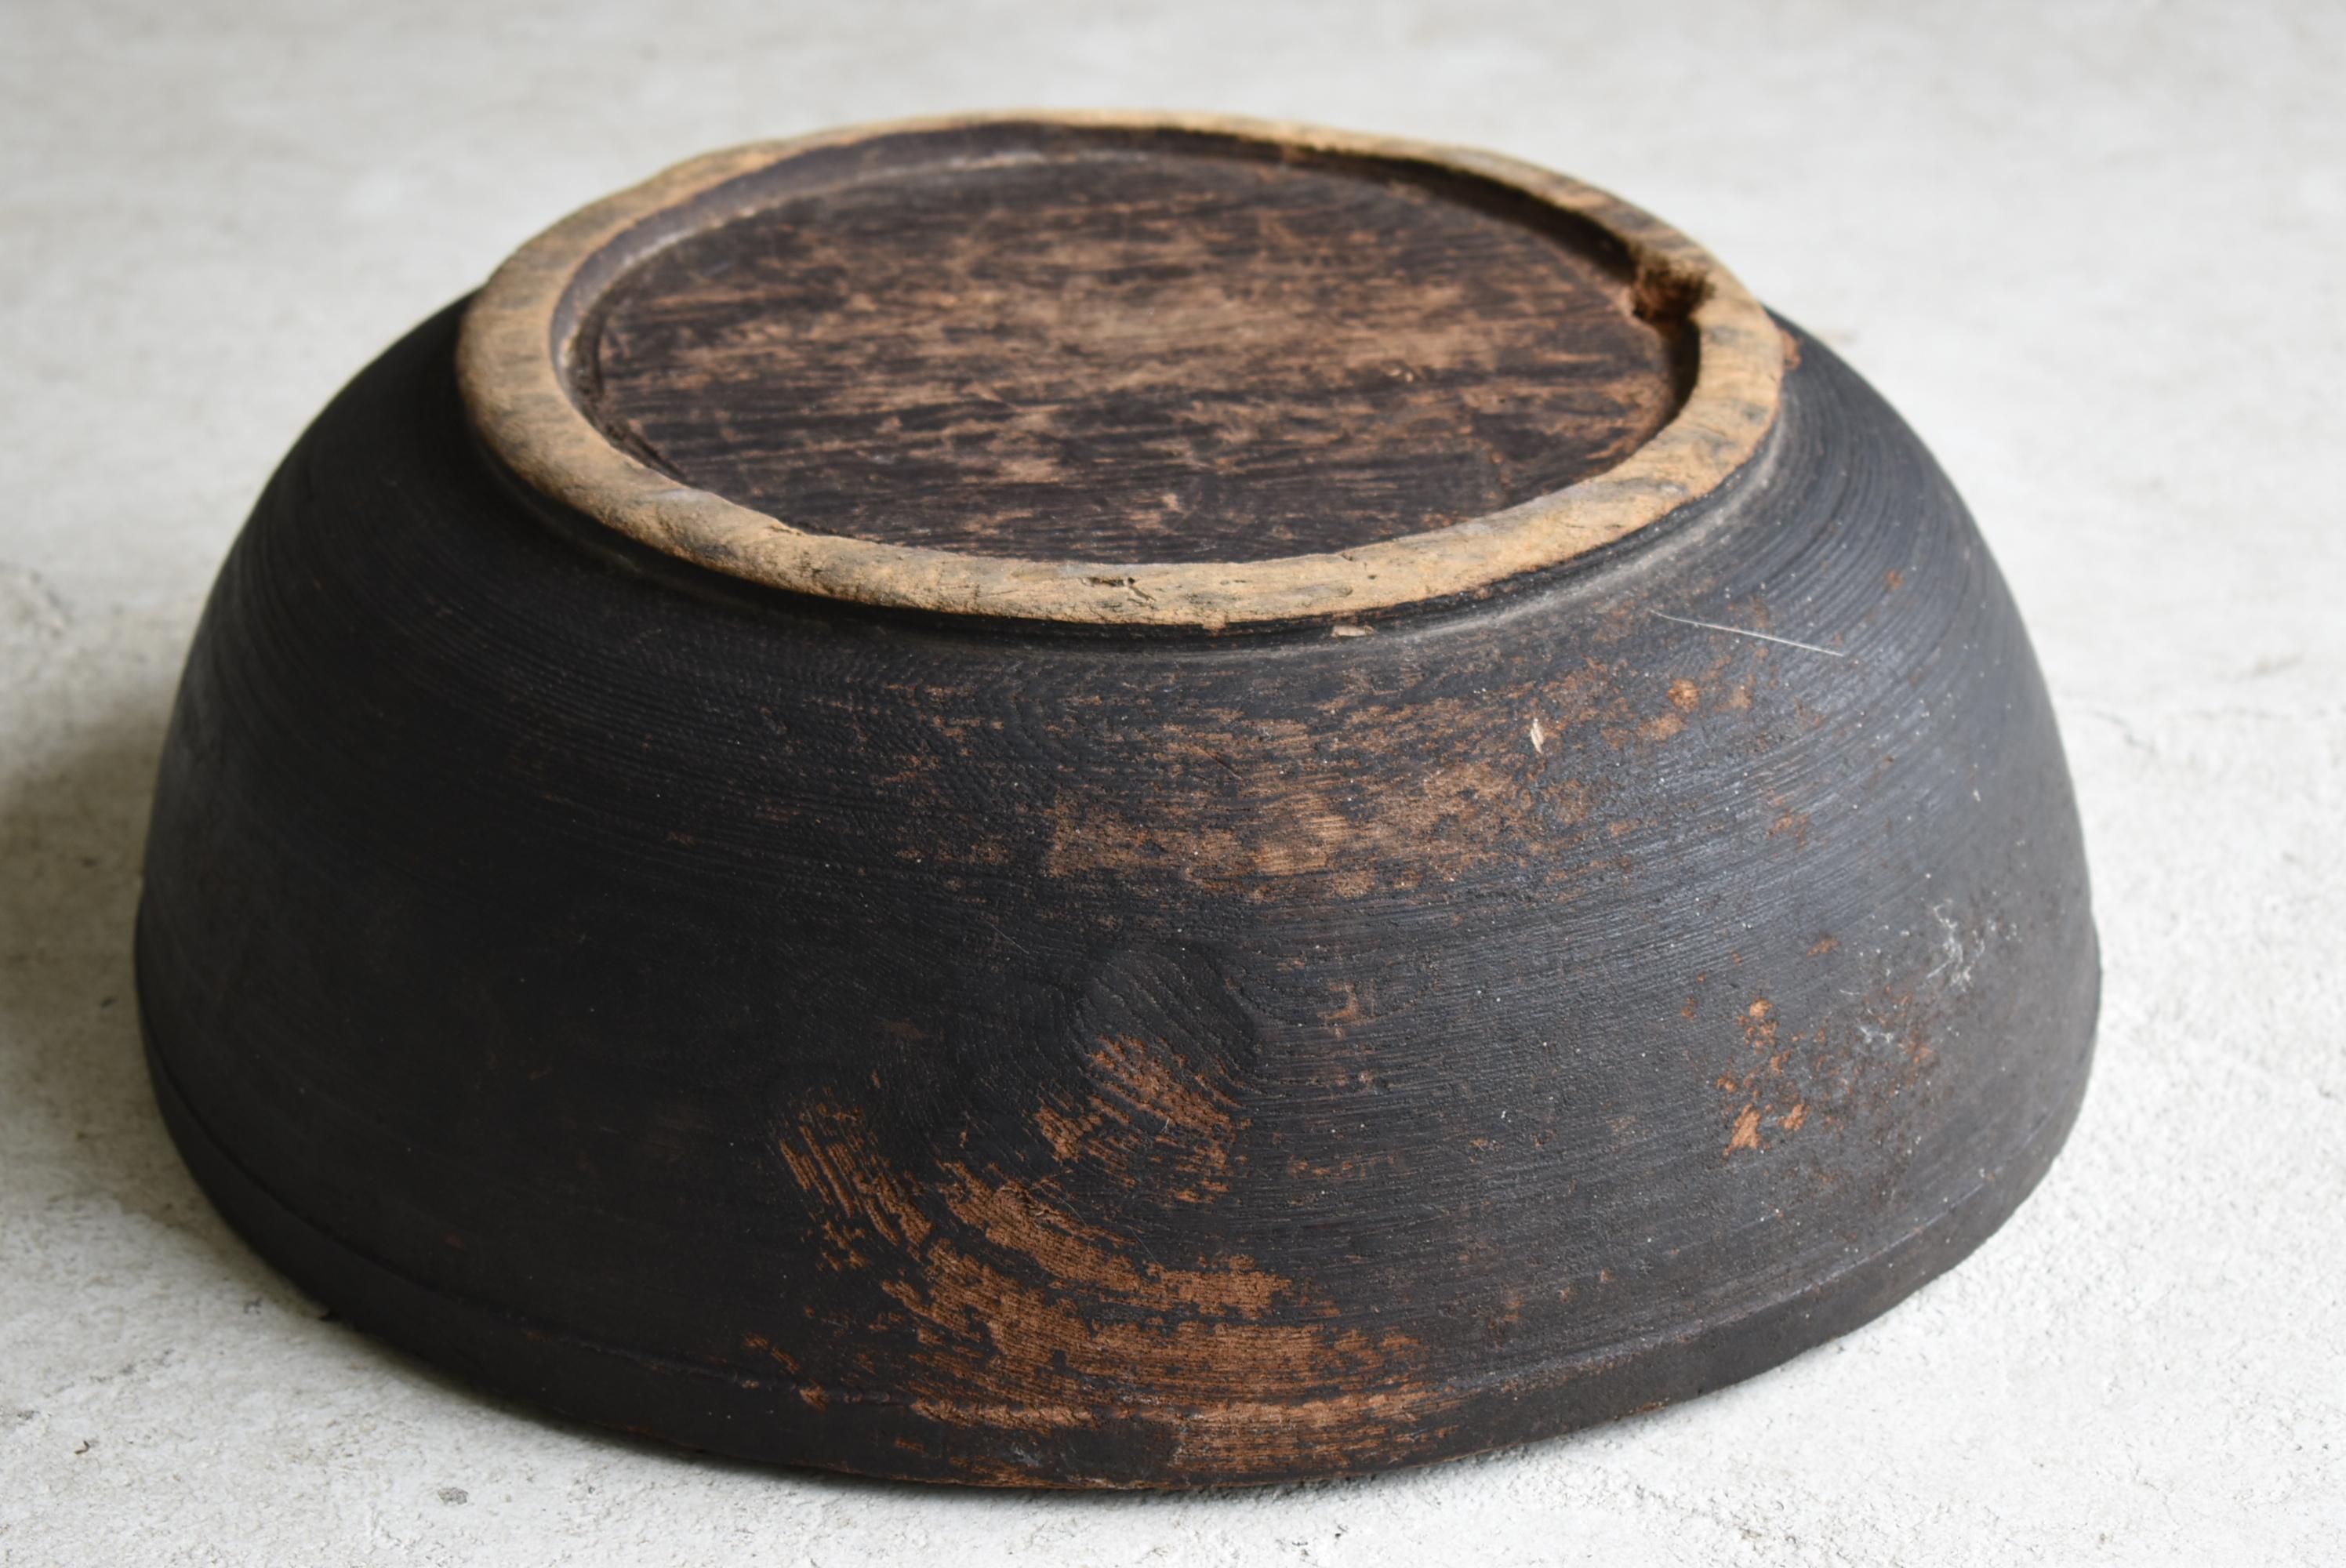 Japanese Antique Wooden Bowl 1860s-1900s/Mingei Wabisabi Primitive Object 3